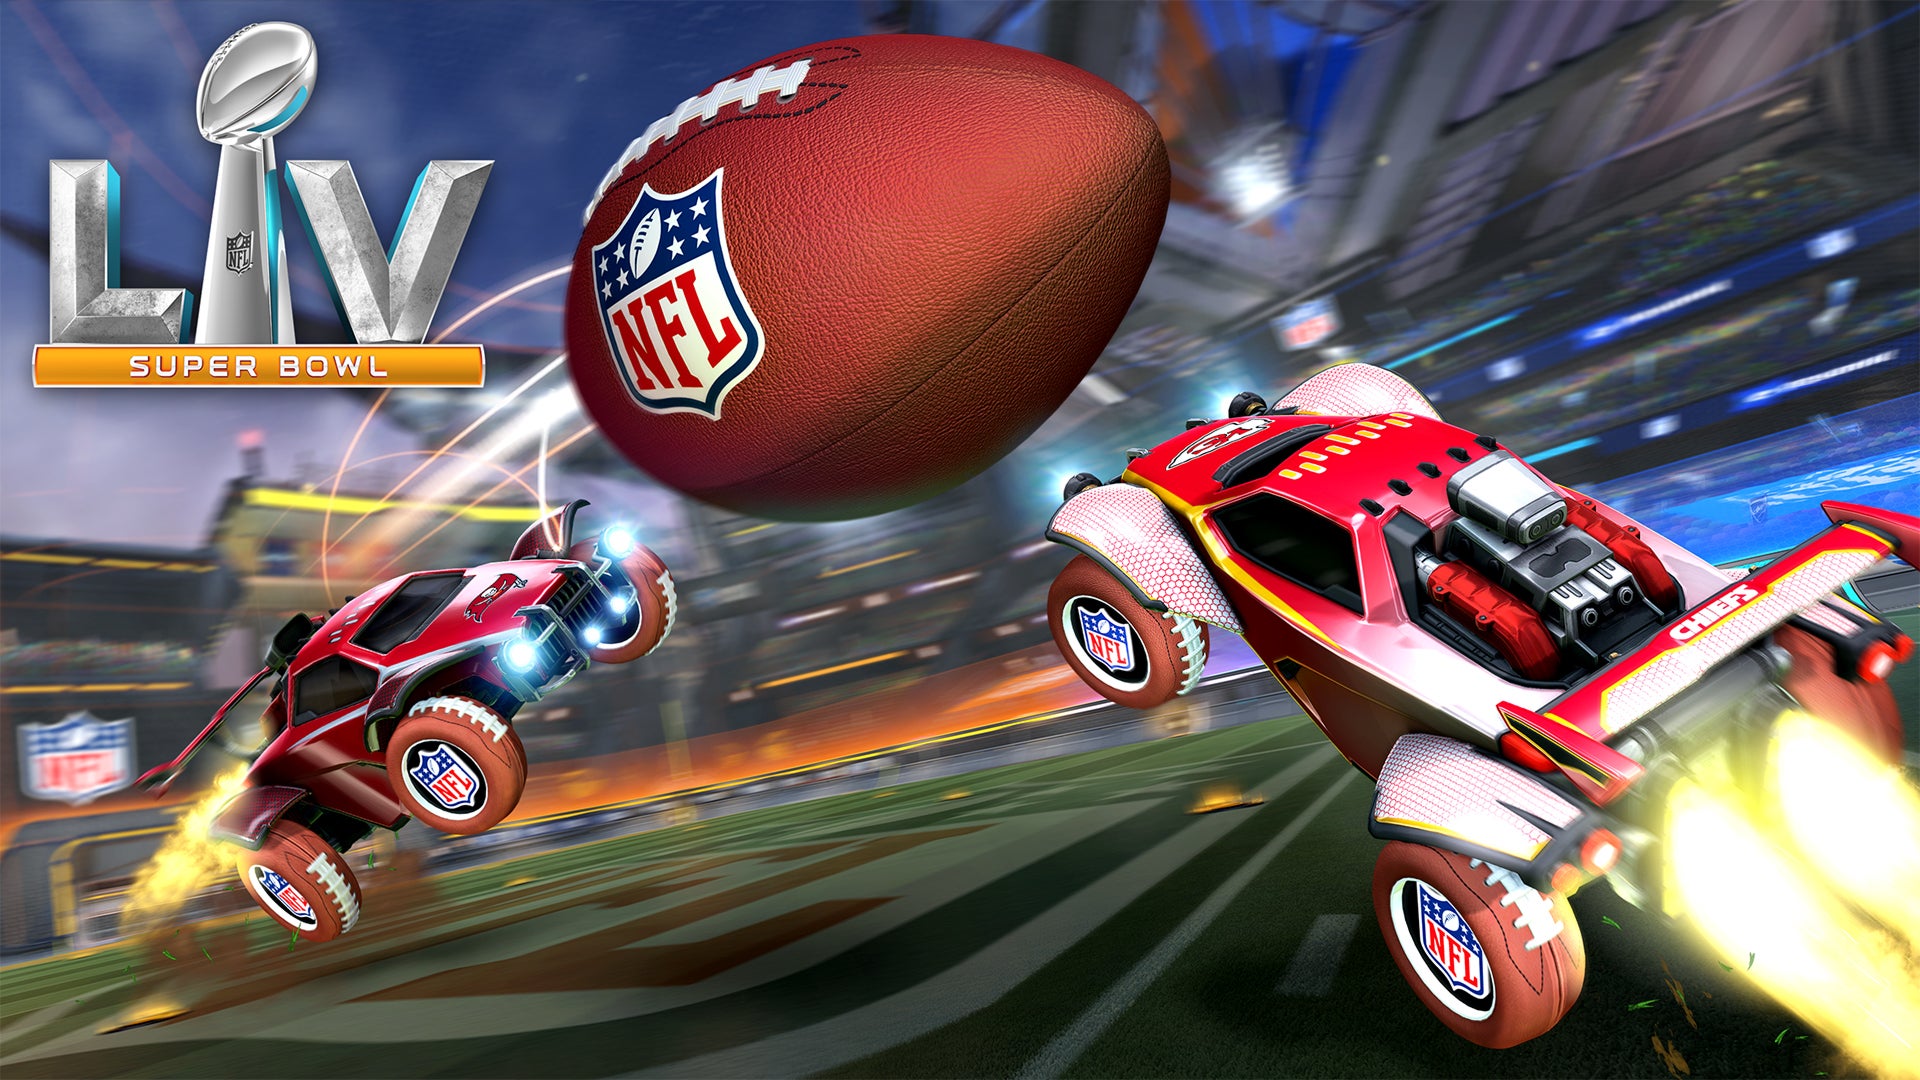 Mettiti a tiro per i festeggiamenti dell'NFL Super Bowl LV su Rocket League Image